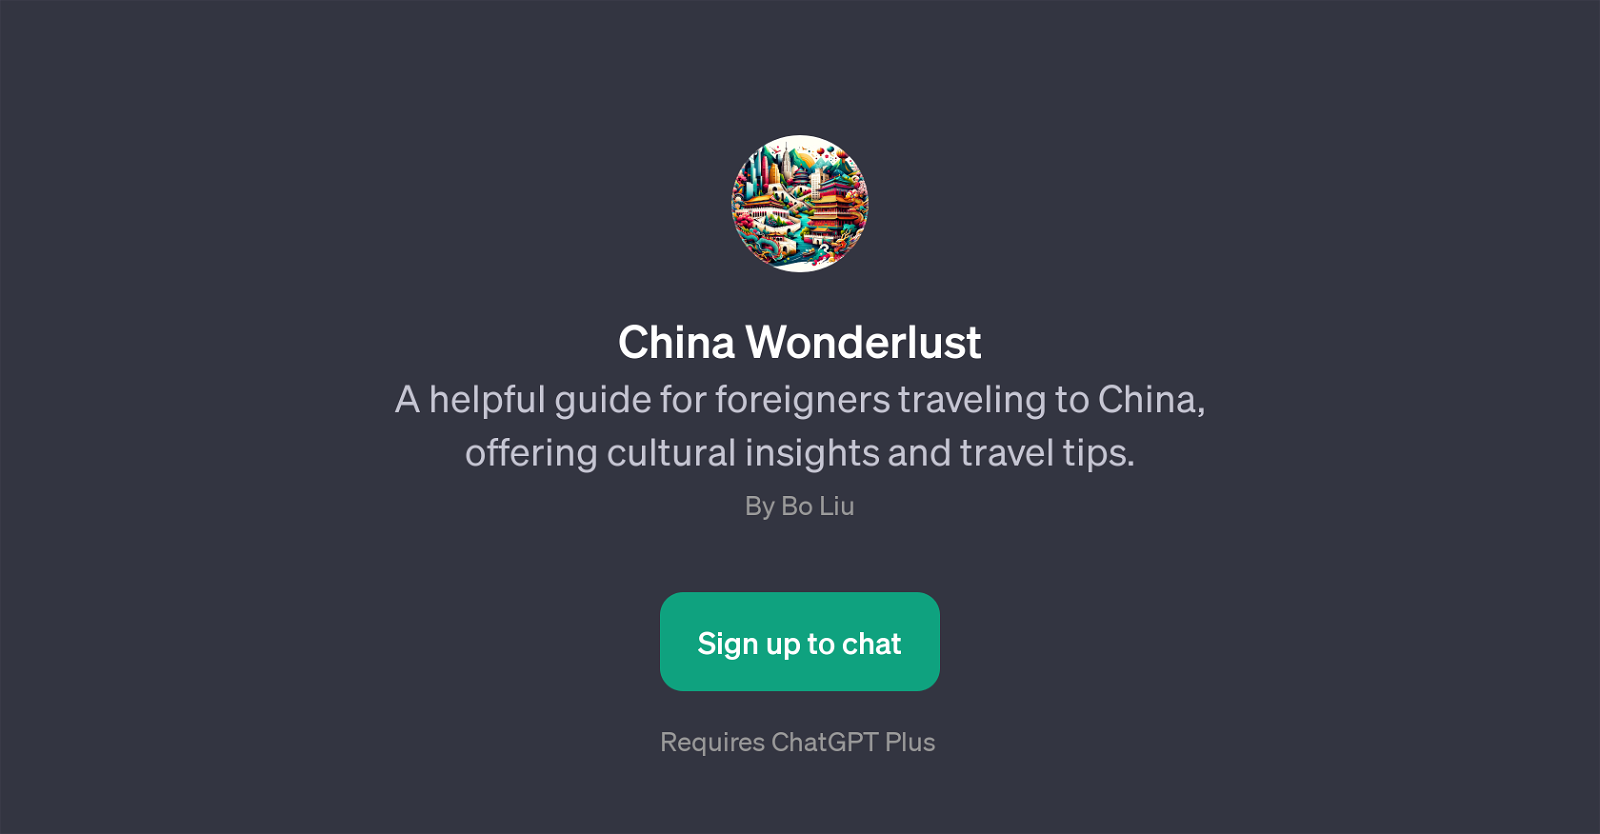 China Wonderlust website